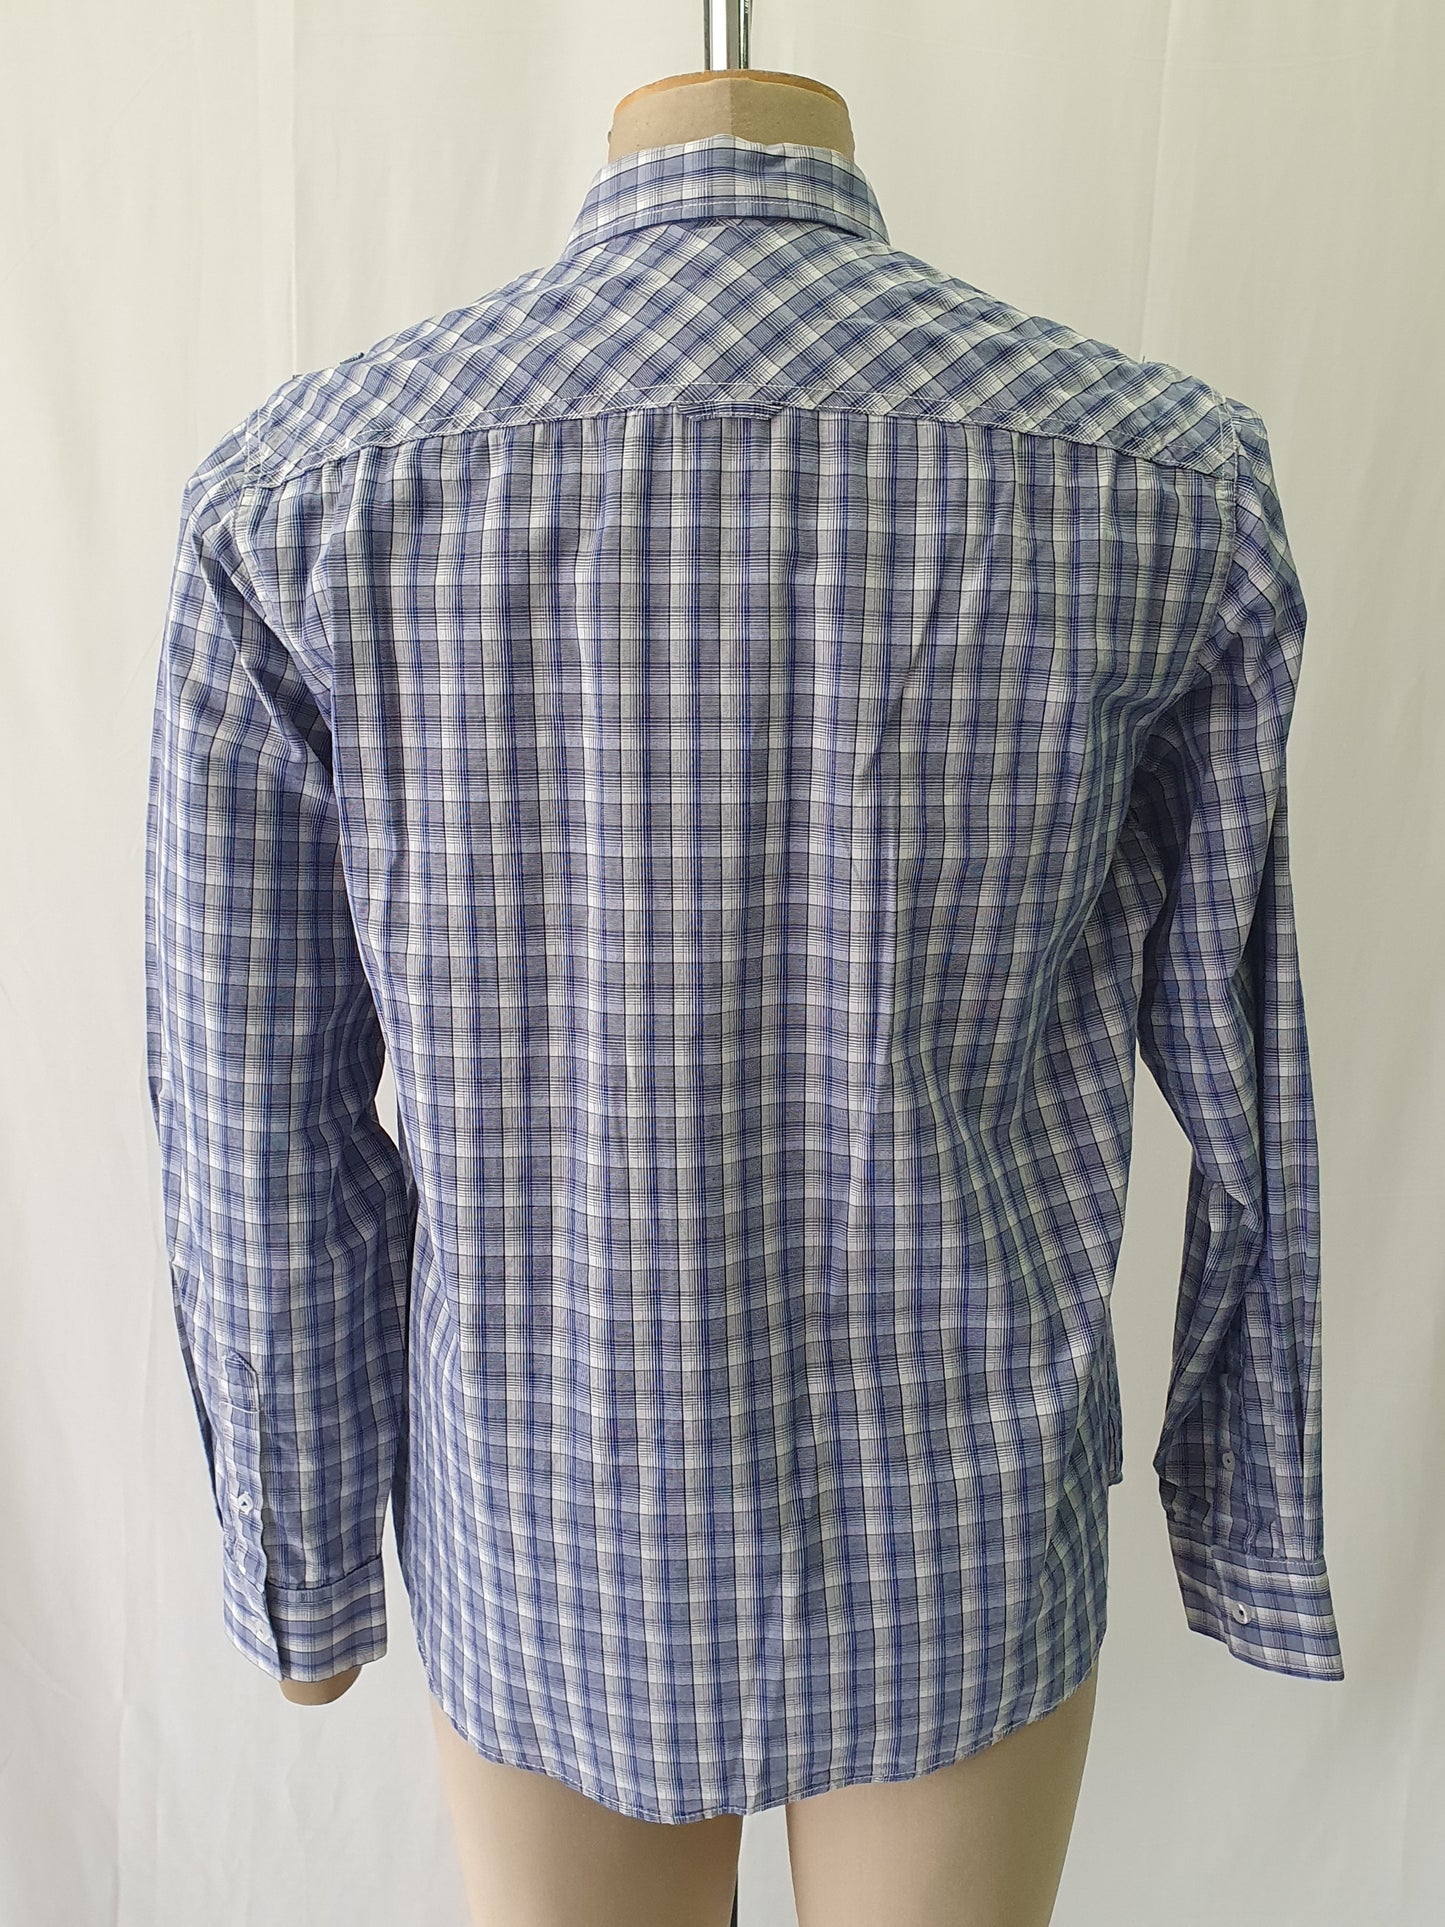 PW5818133 - Pelaco blue check casual shirt - Regular Fit